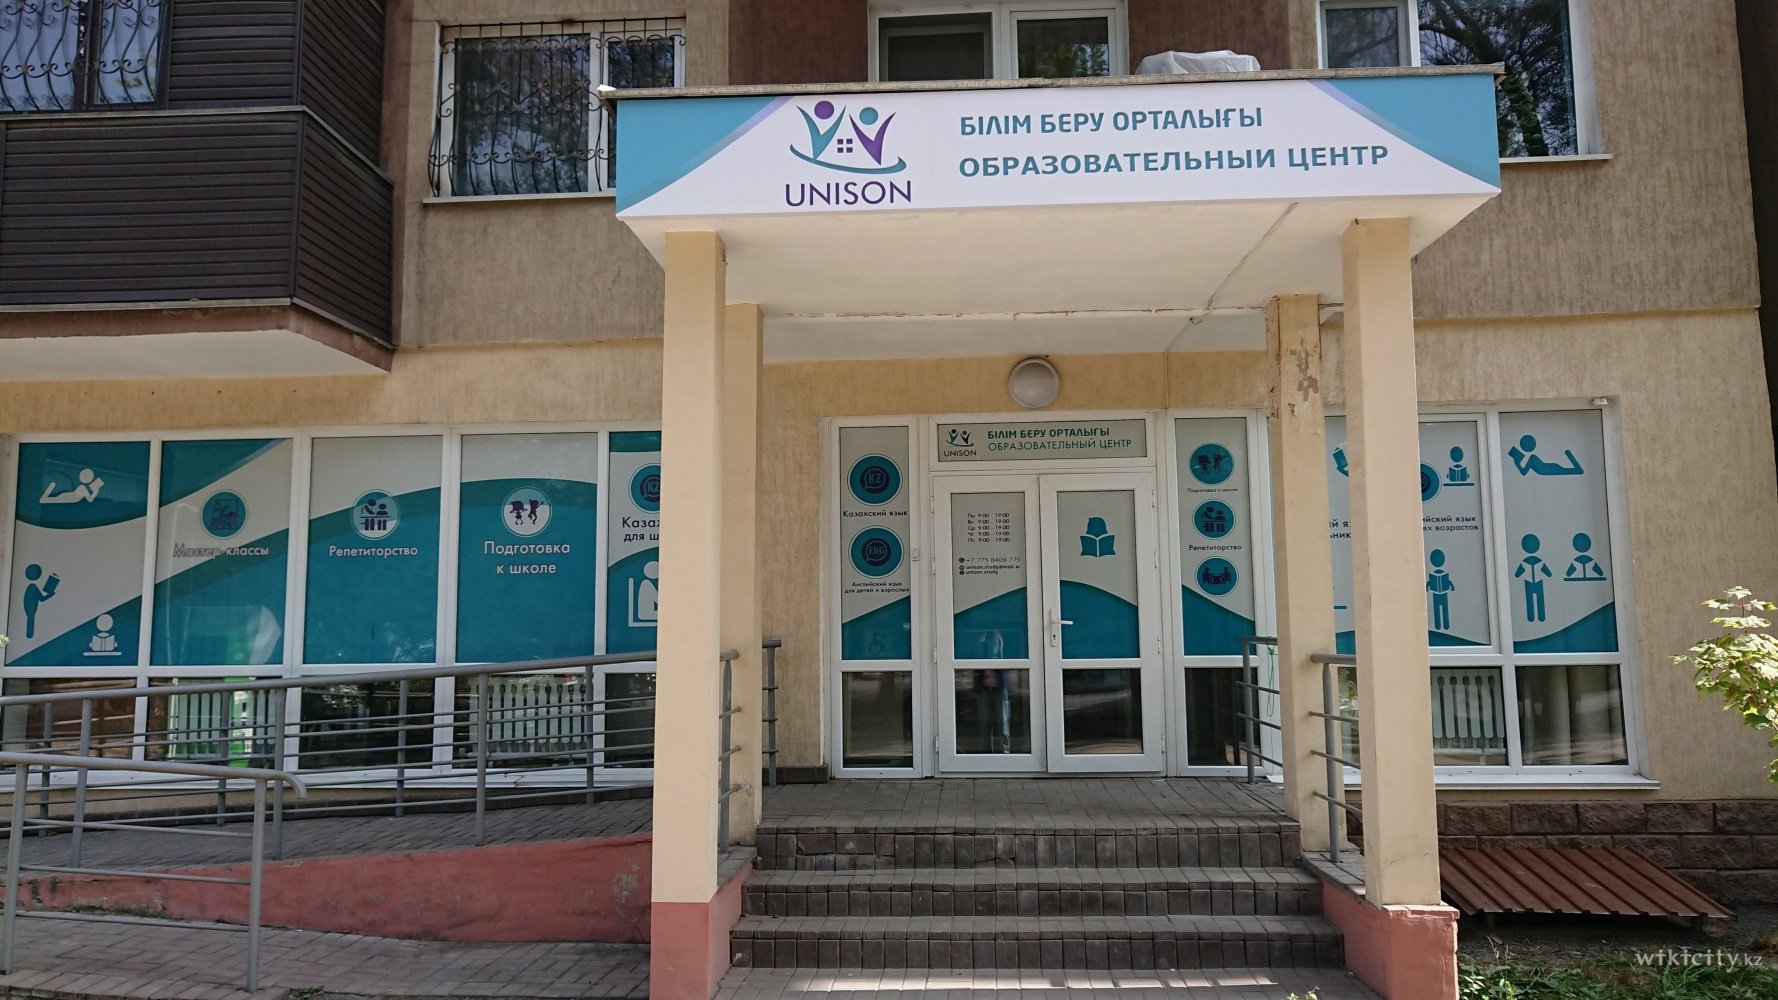 Фото Образовательный центр "Unison" Алматы. 